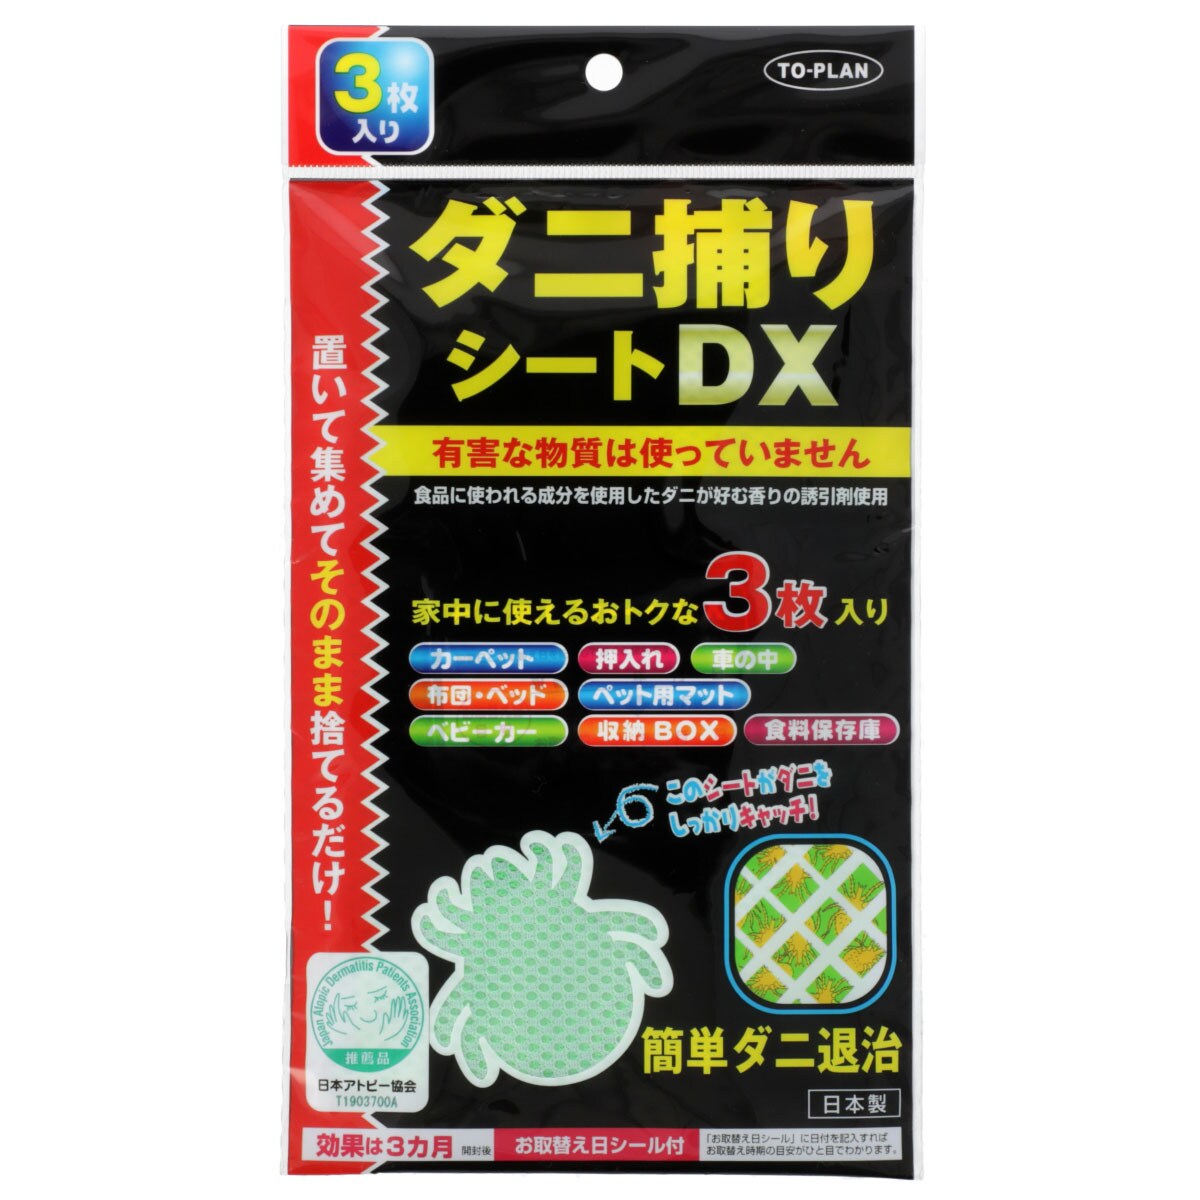 デコホーム商品】ダニ捕りシートDX 3枚入り(RH01)通販 | ニトリネット 